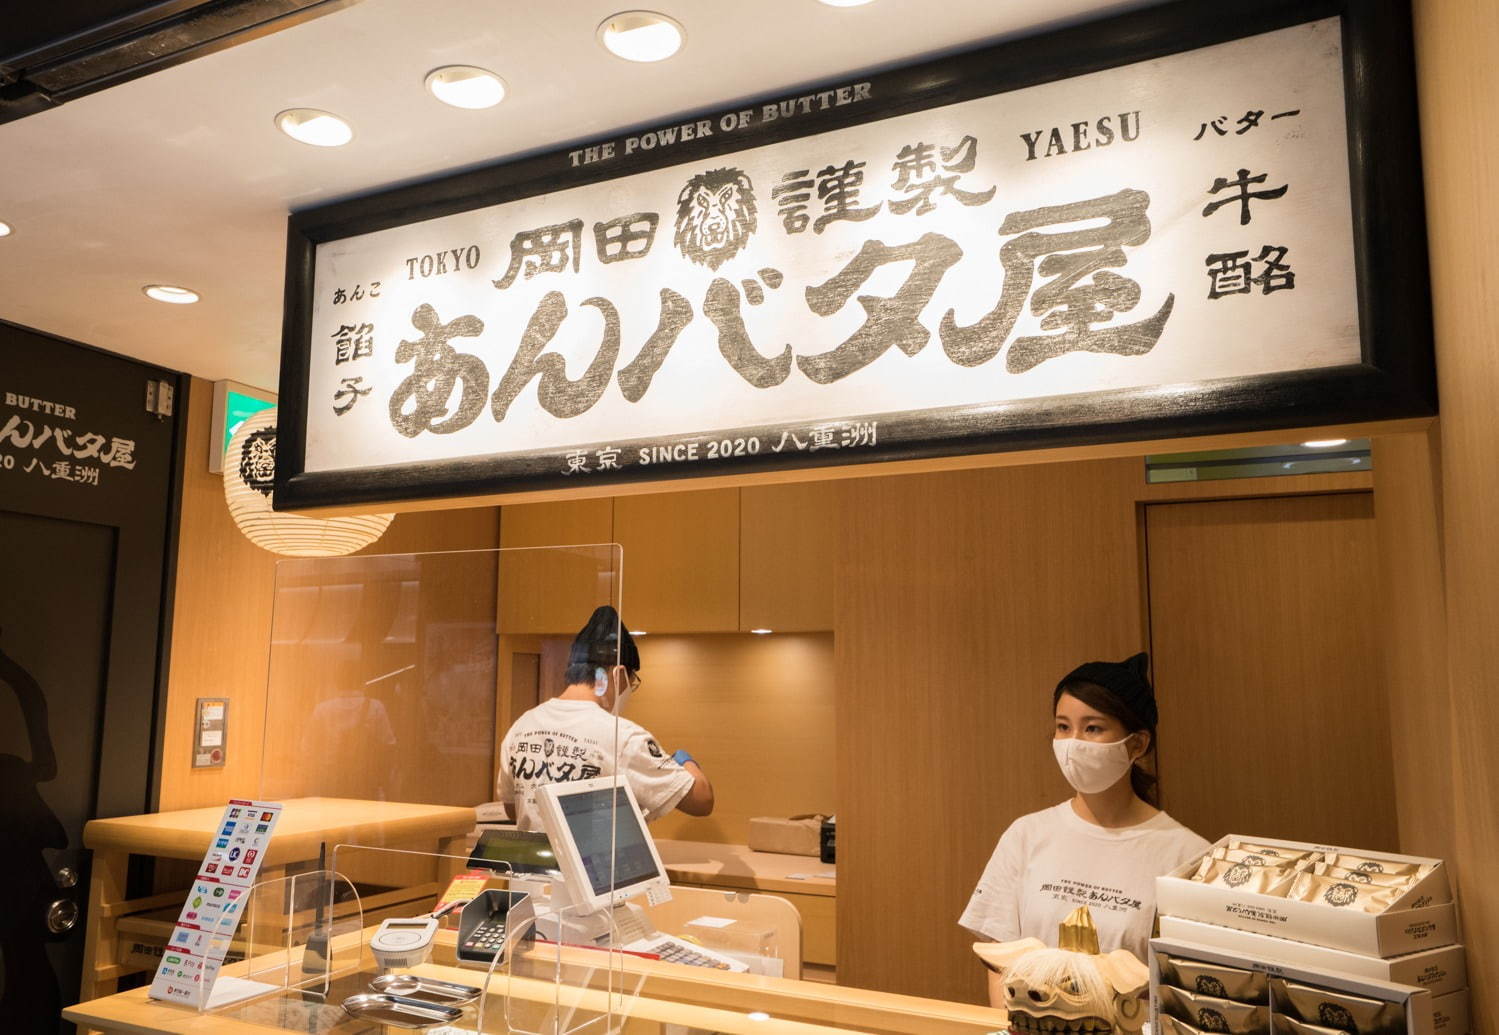 バタ 屋 あん ルタオの運営会社がプロデュースする新ブランド「岡田謹製 あんバタ屋」が東京ギフトパレットにオープン